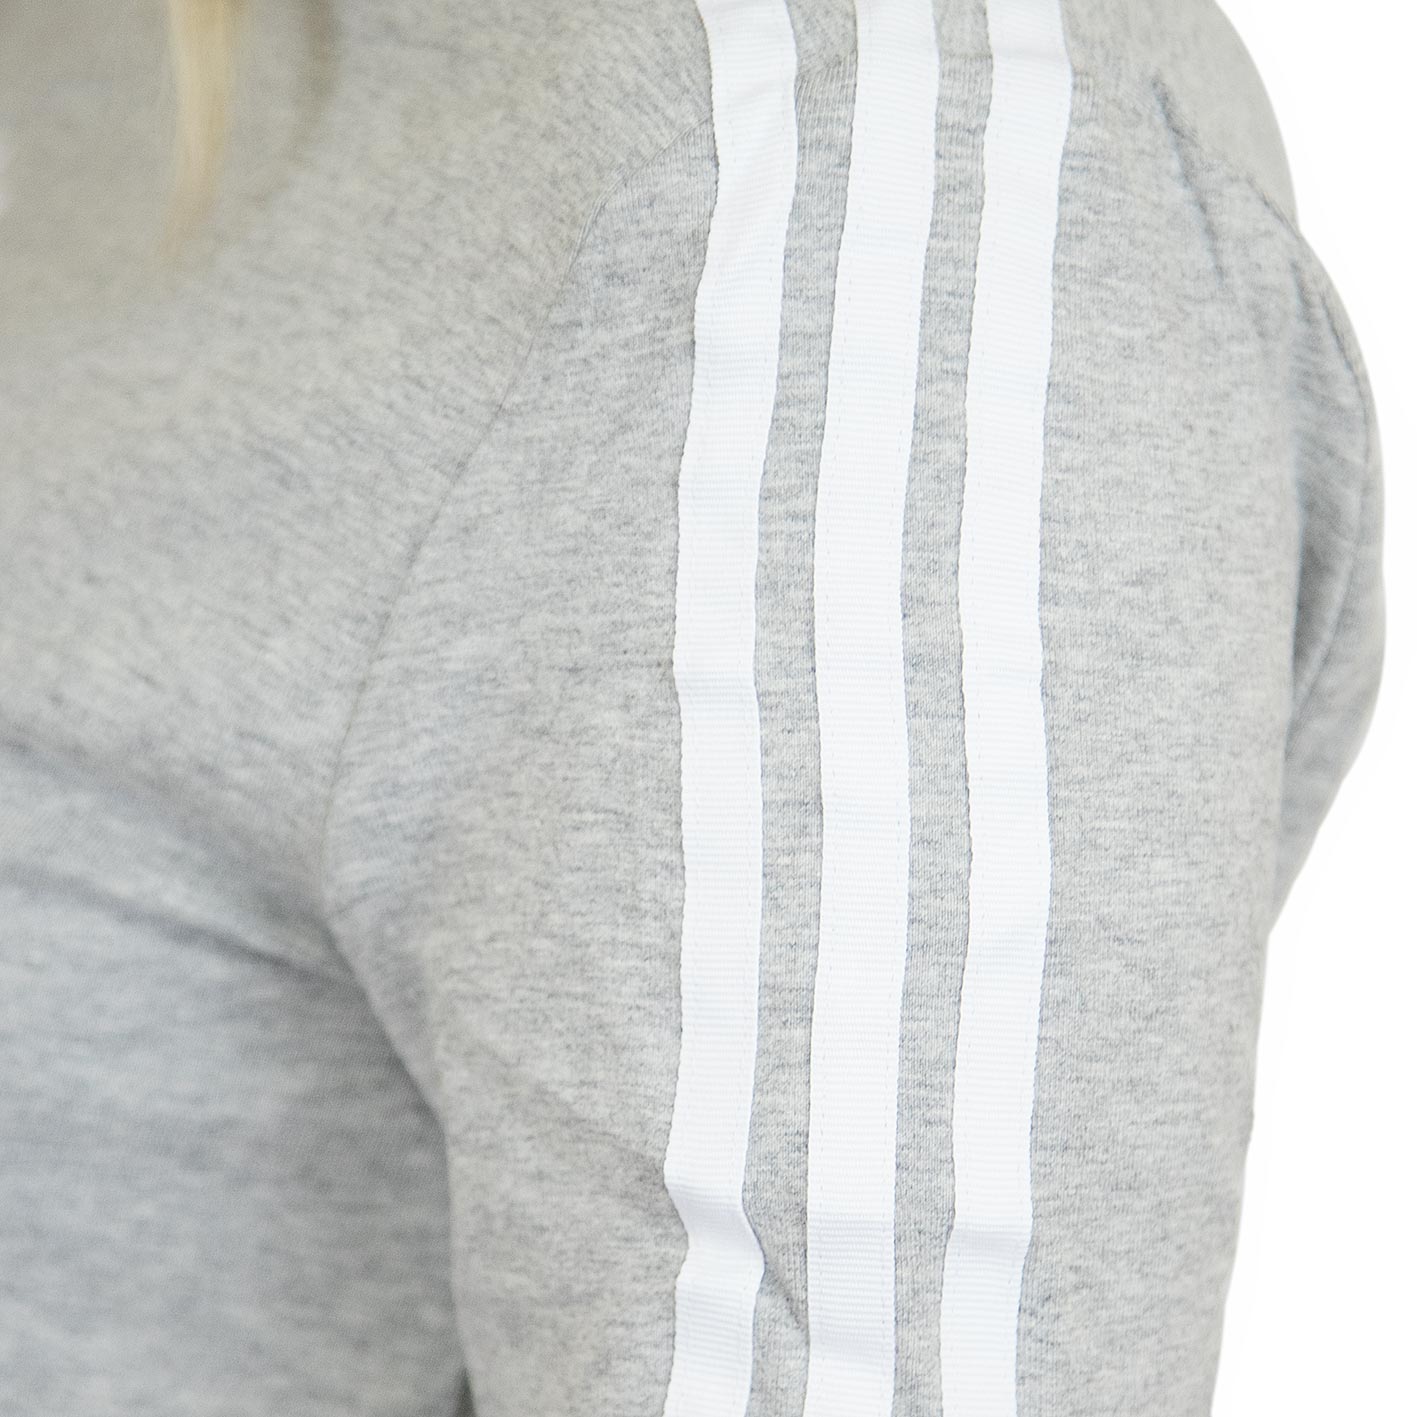 ☆ Adidas Originals Damen Longsleeve 3 Stripes grau - hier bestellen!